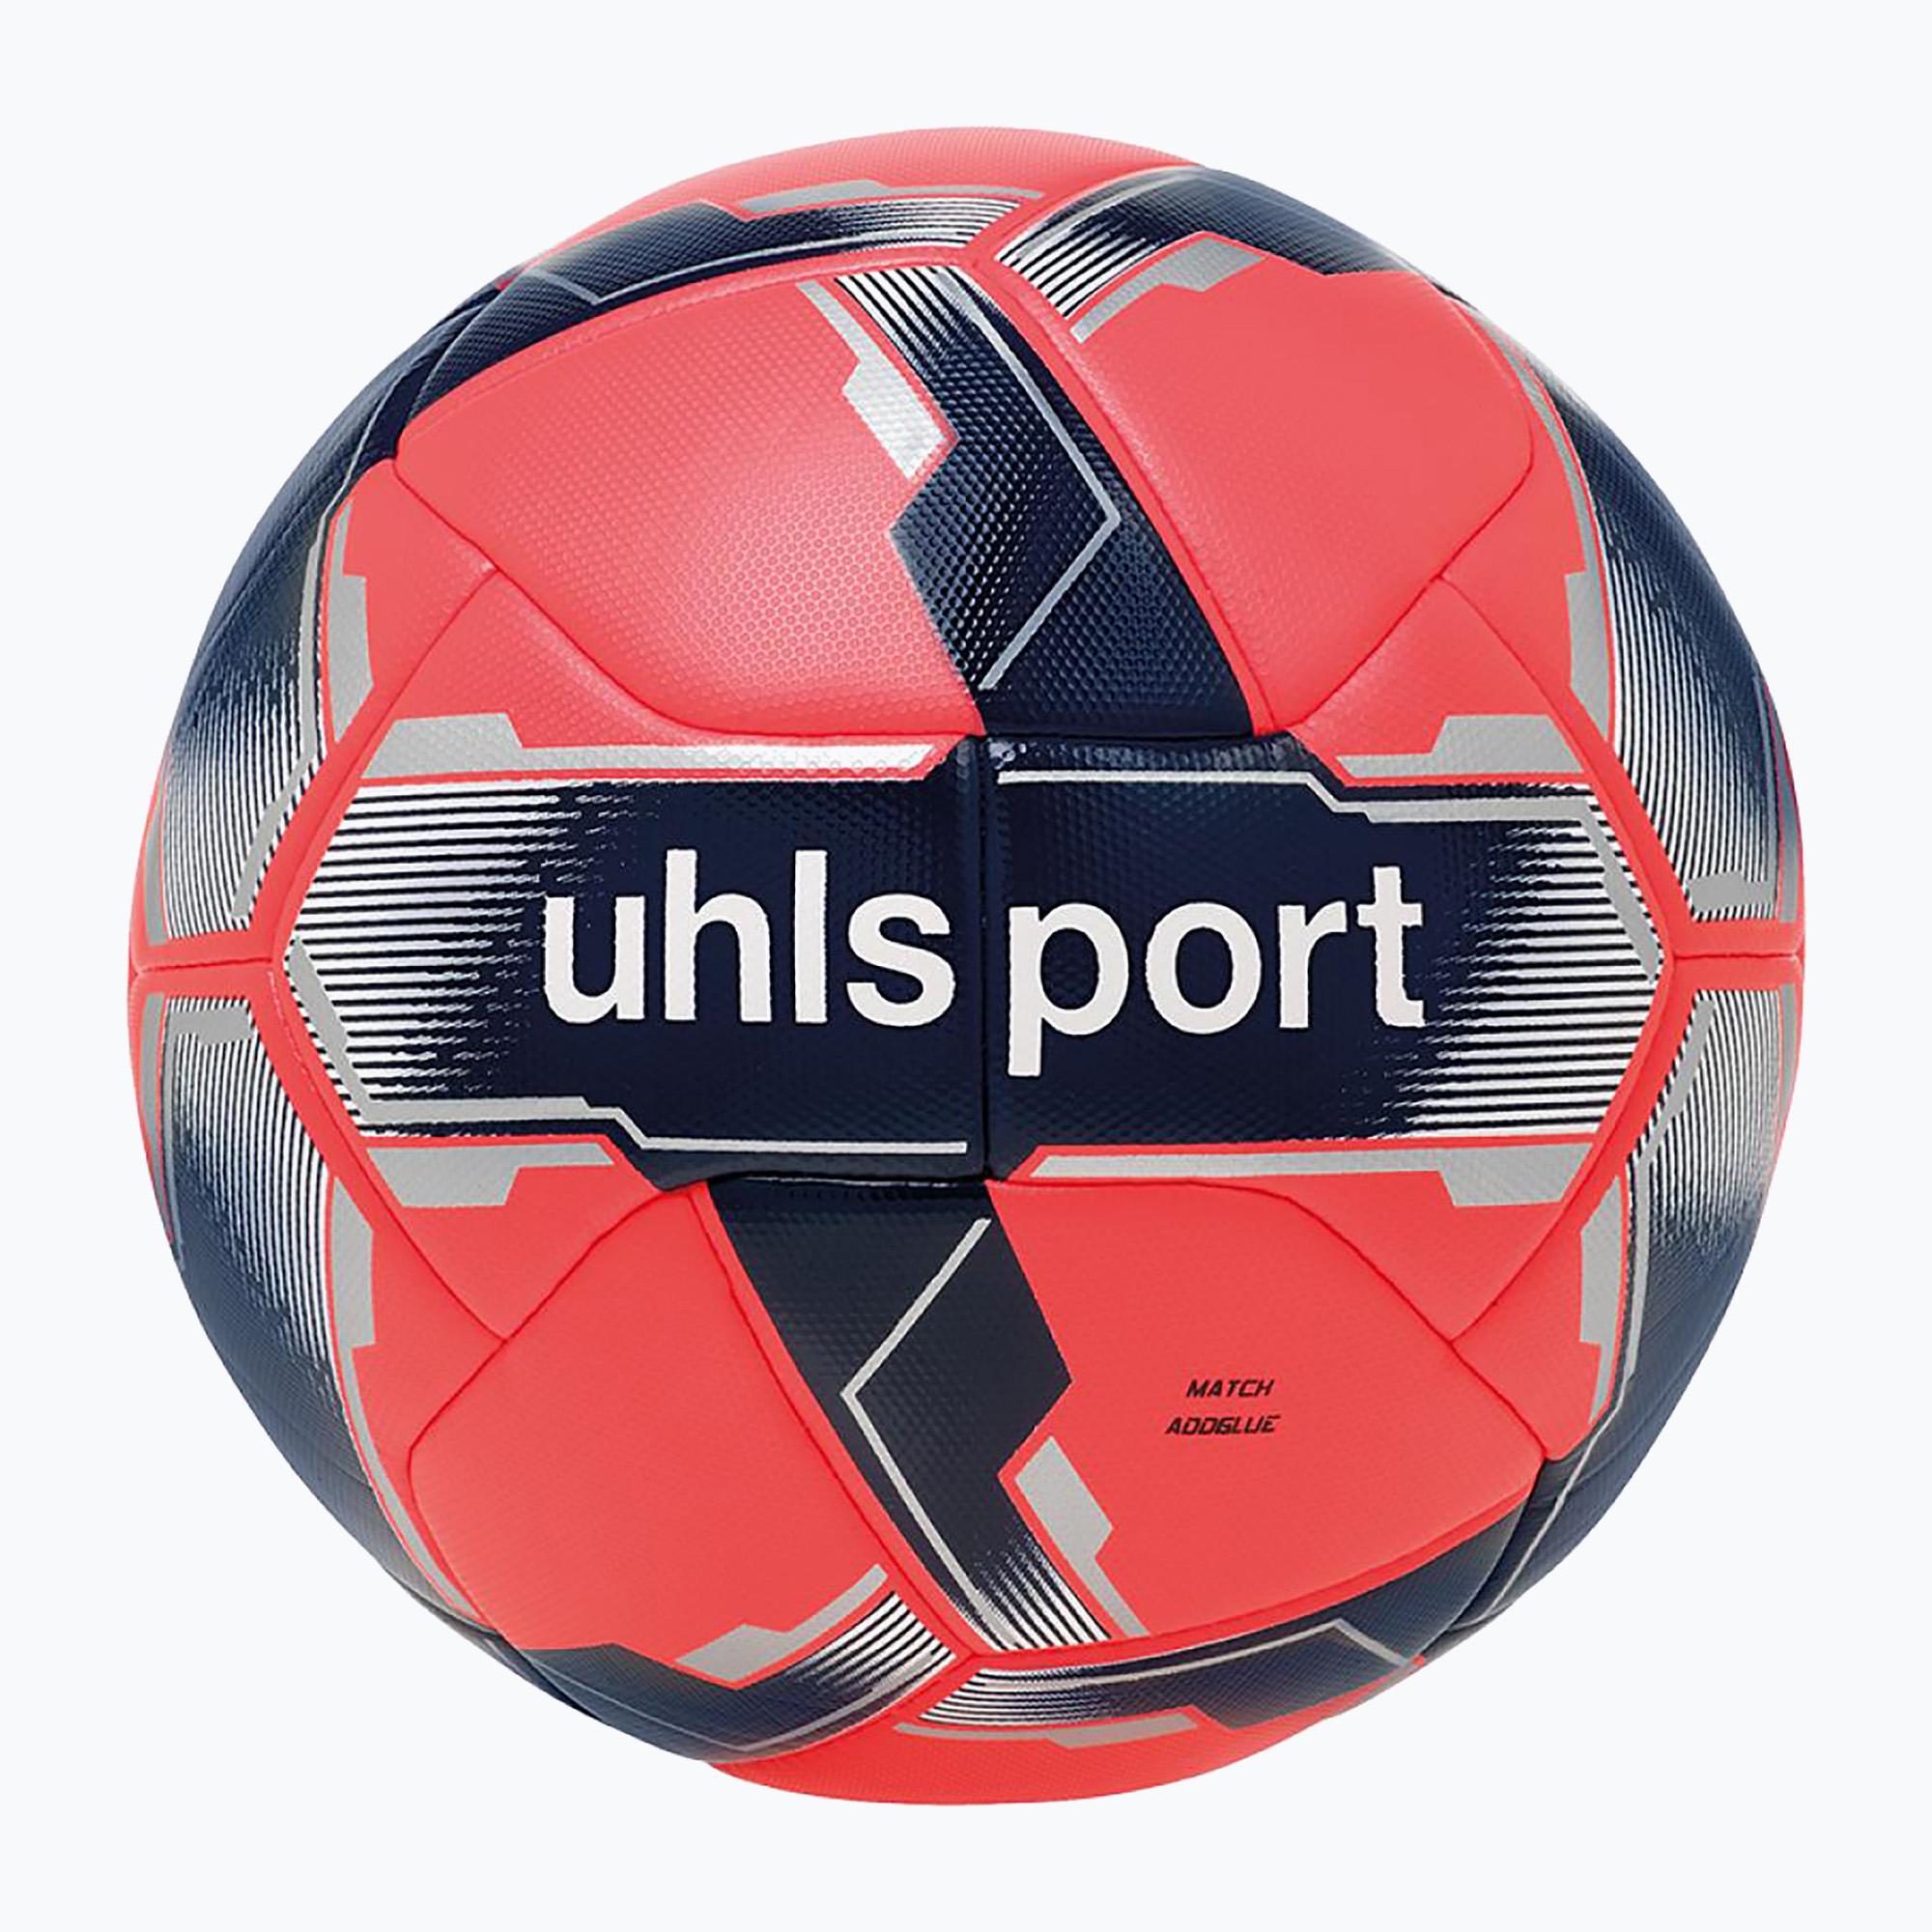 Футбол uhlsport Match Addglue fluo red/navy/silver размер 5